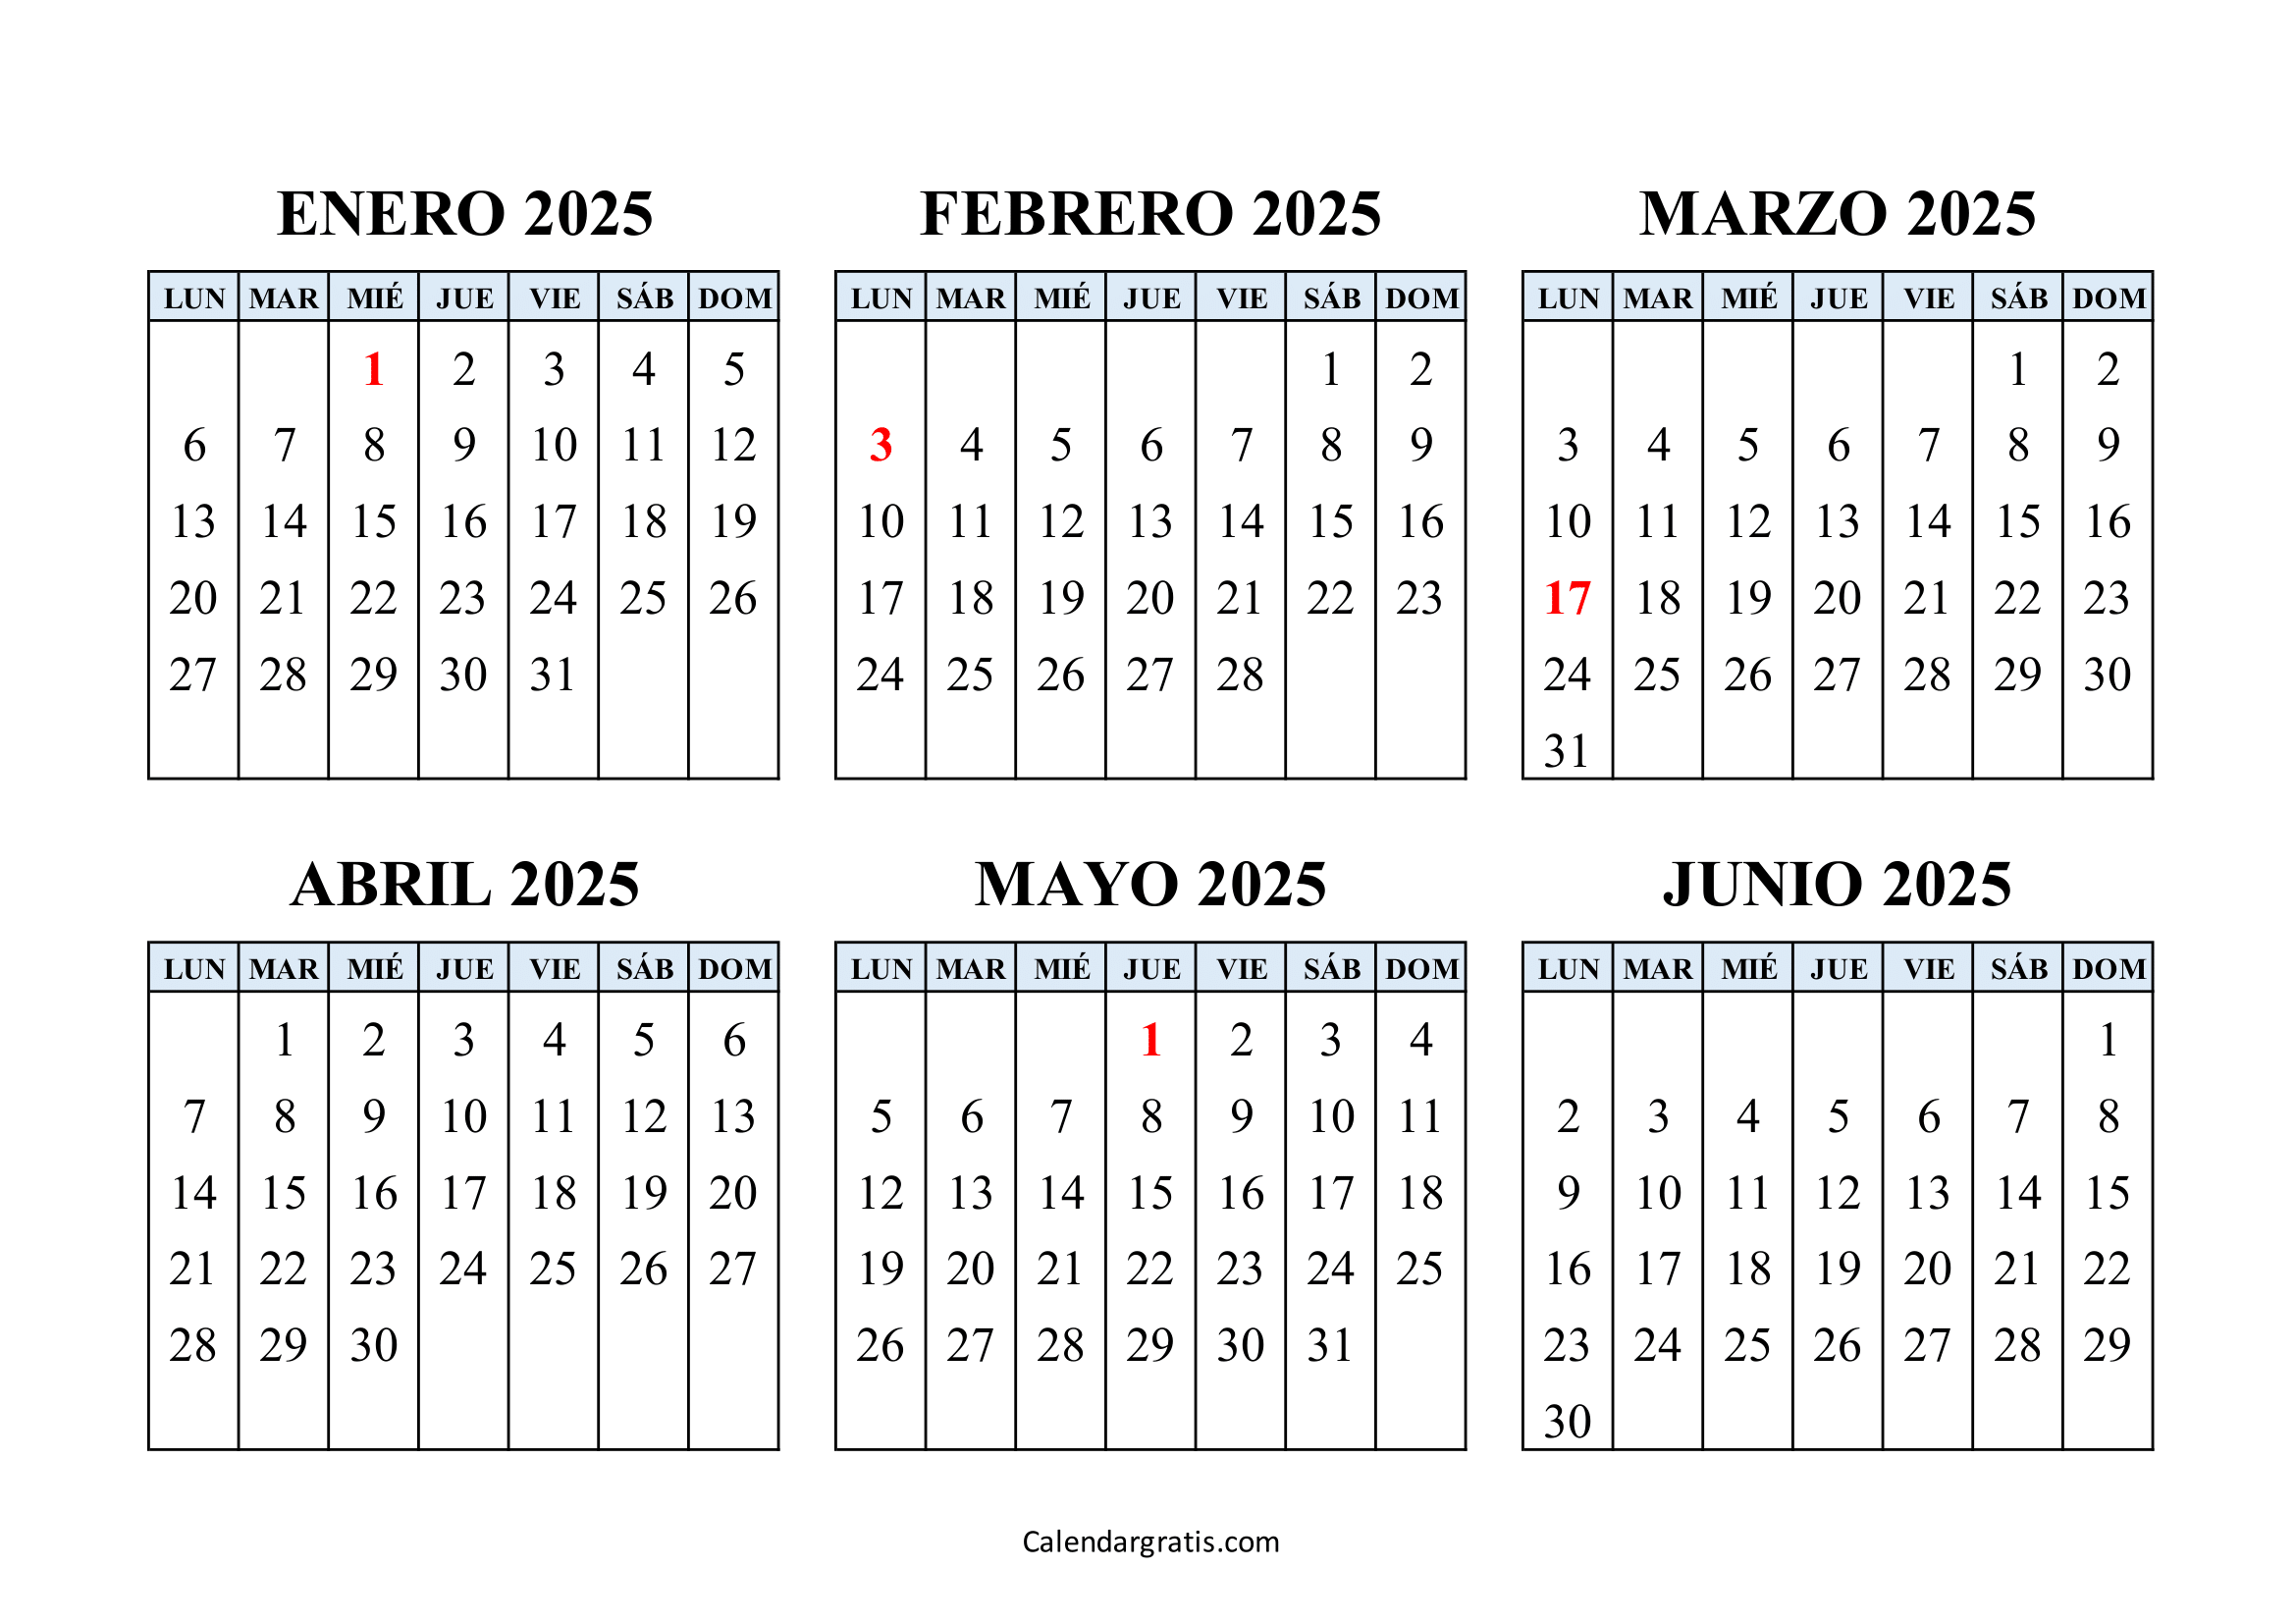 Calendario enero a junio 2025 España